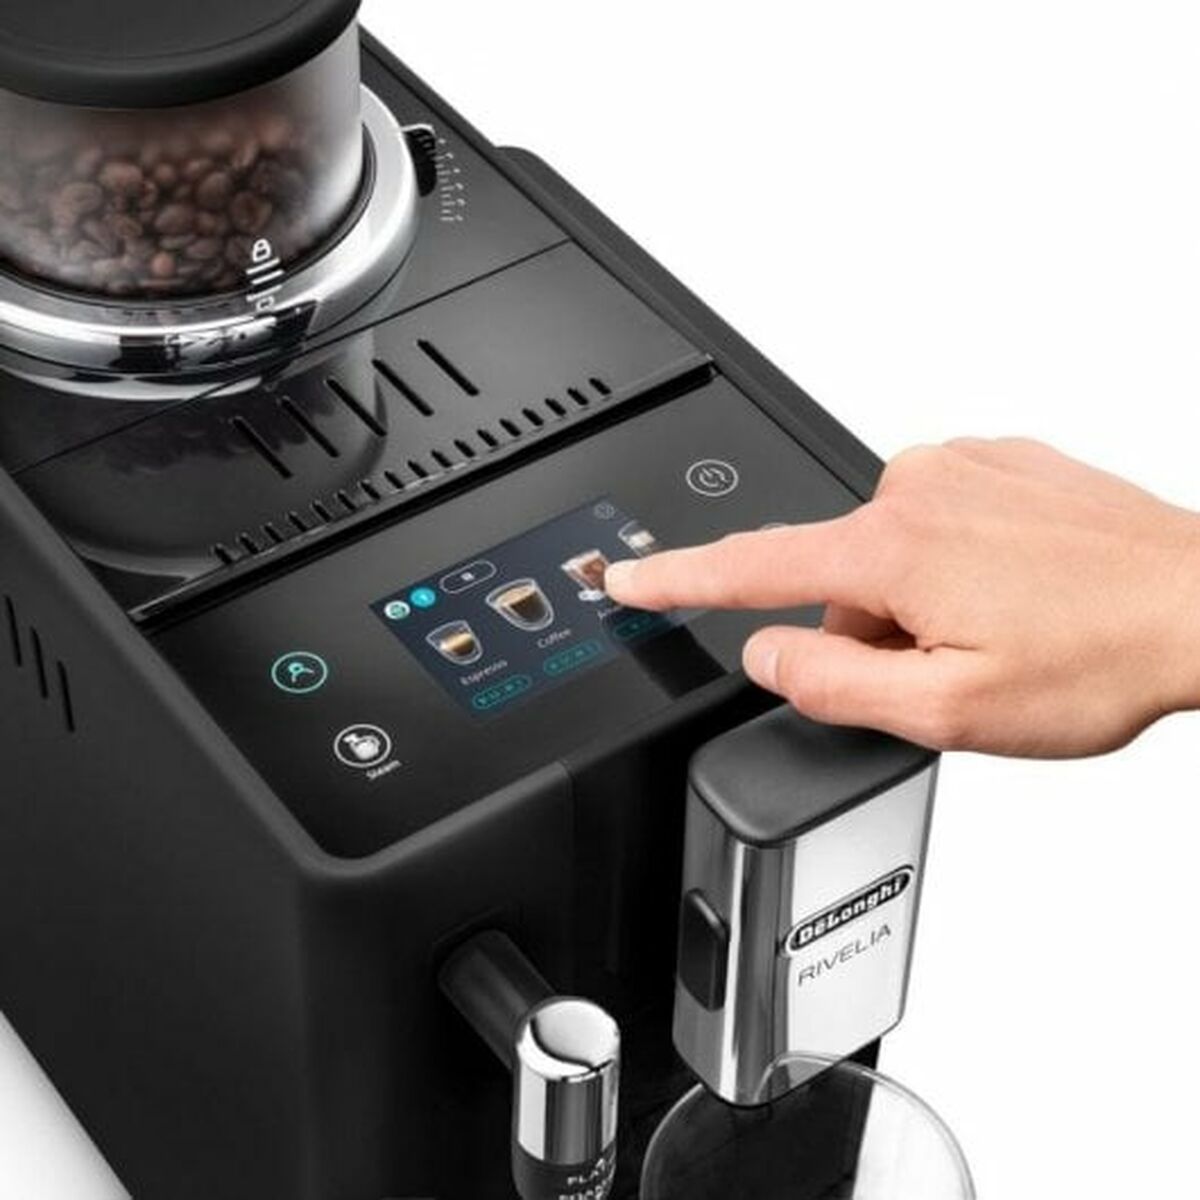 Superautomatisch koffiezetapparaat DeLonghi Zwart